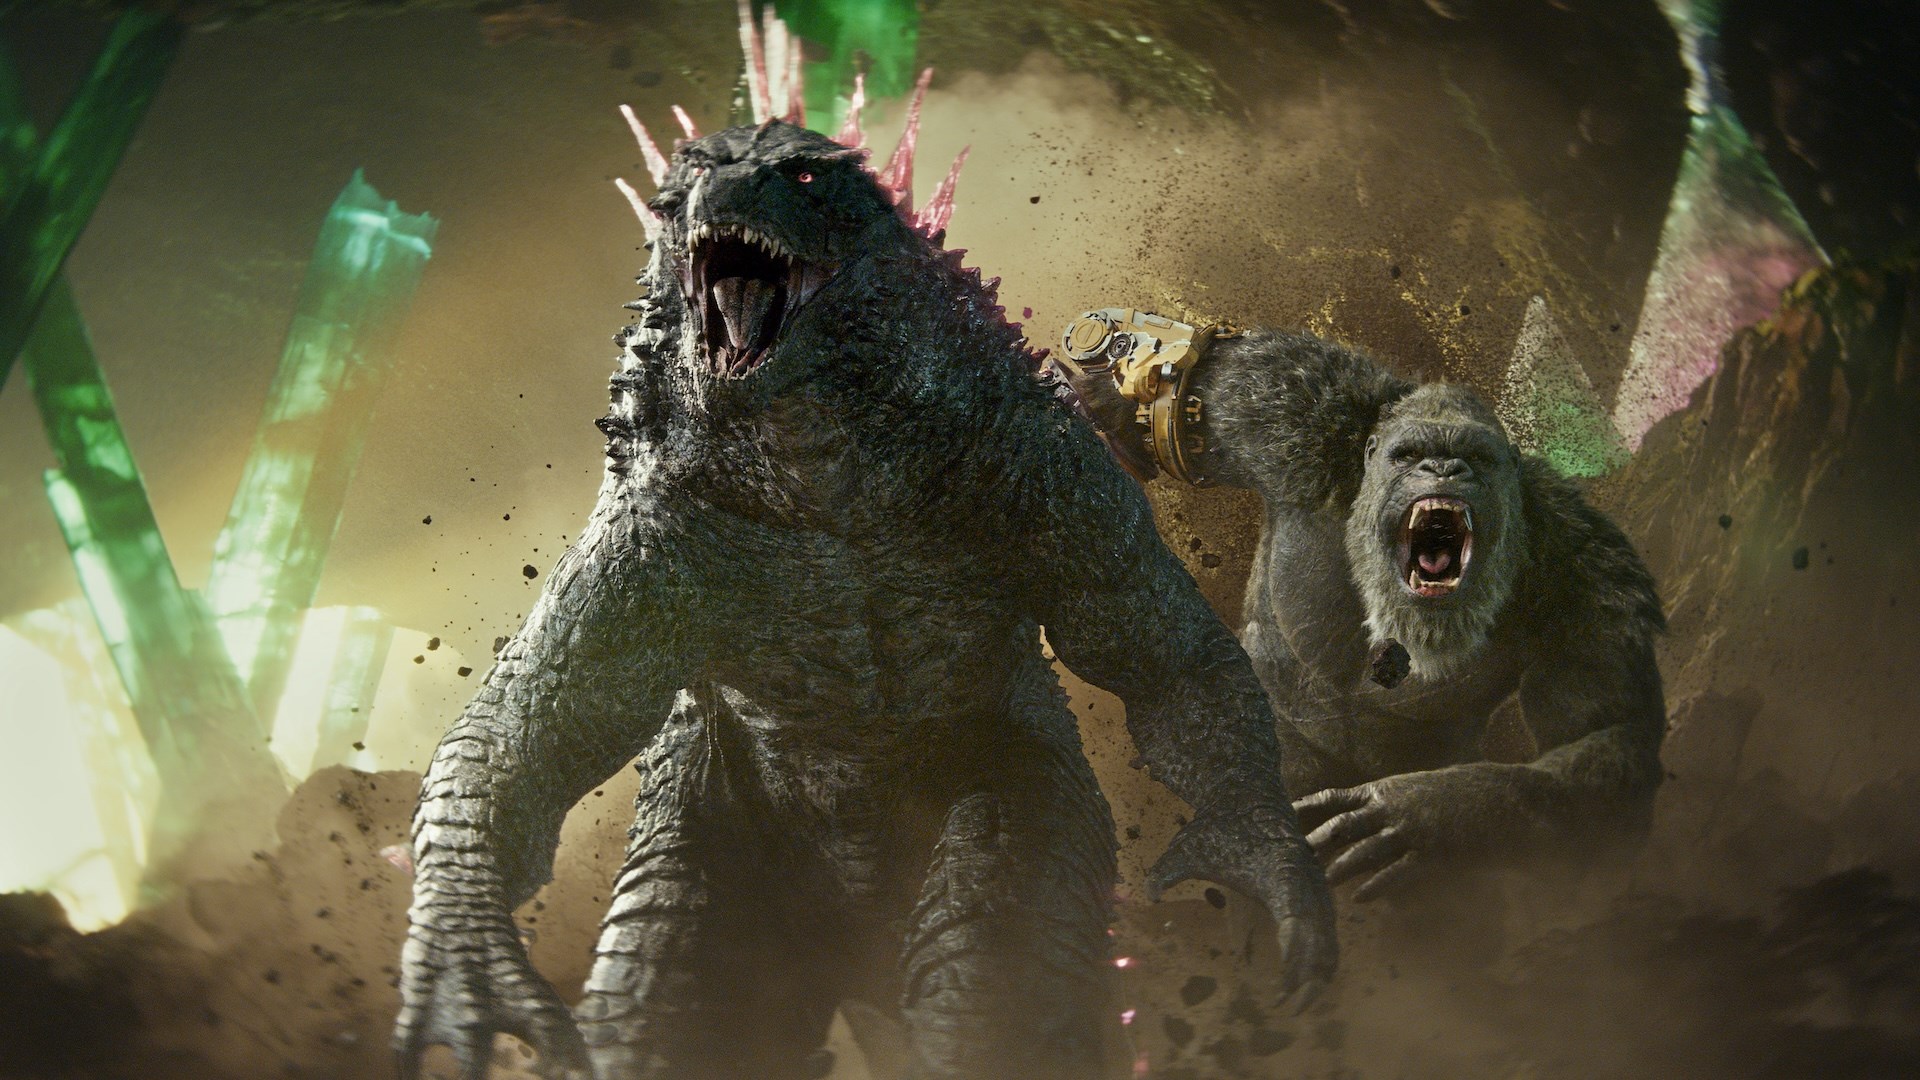 Affiche du film Godzilla x Kong : Le Nouvel Empire